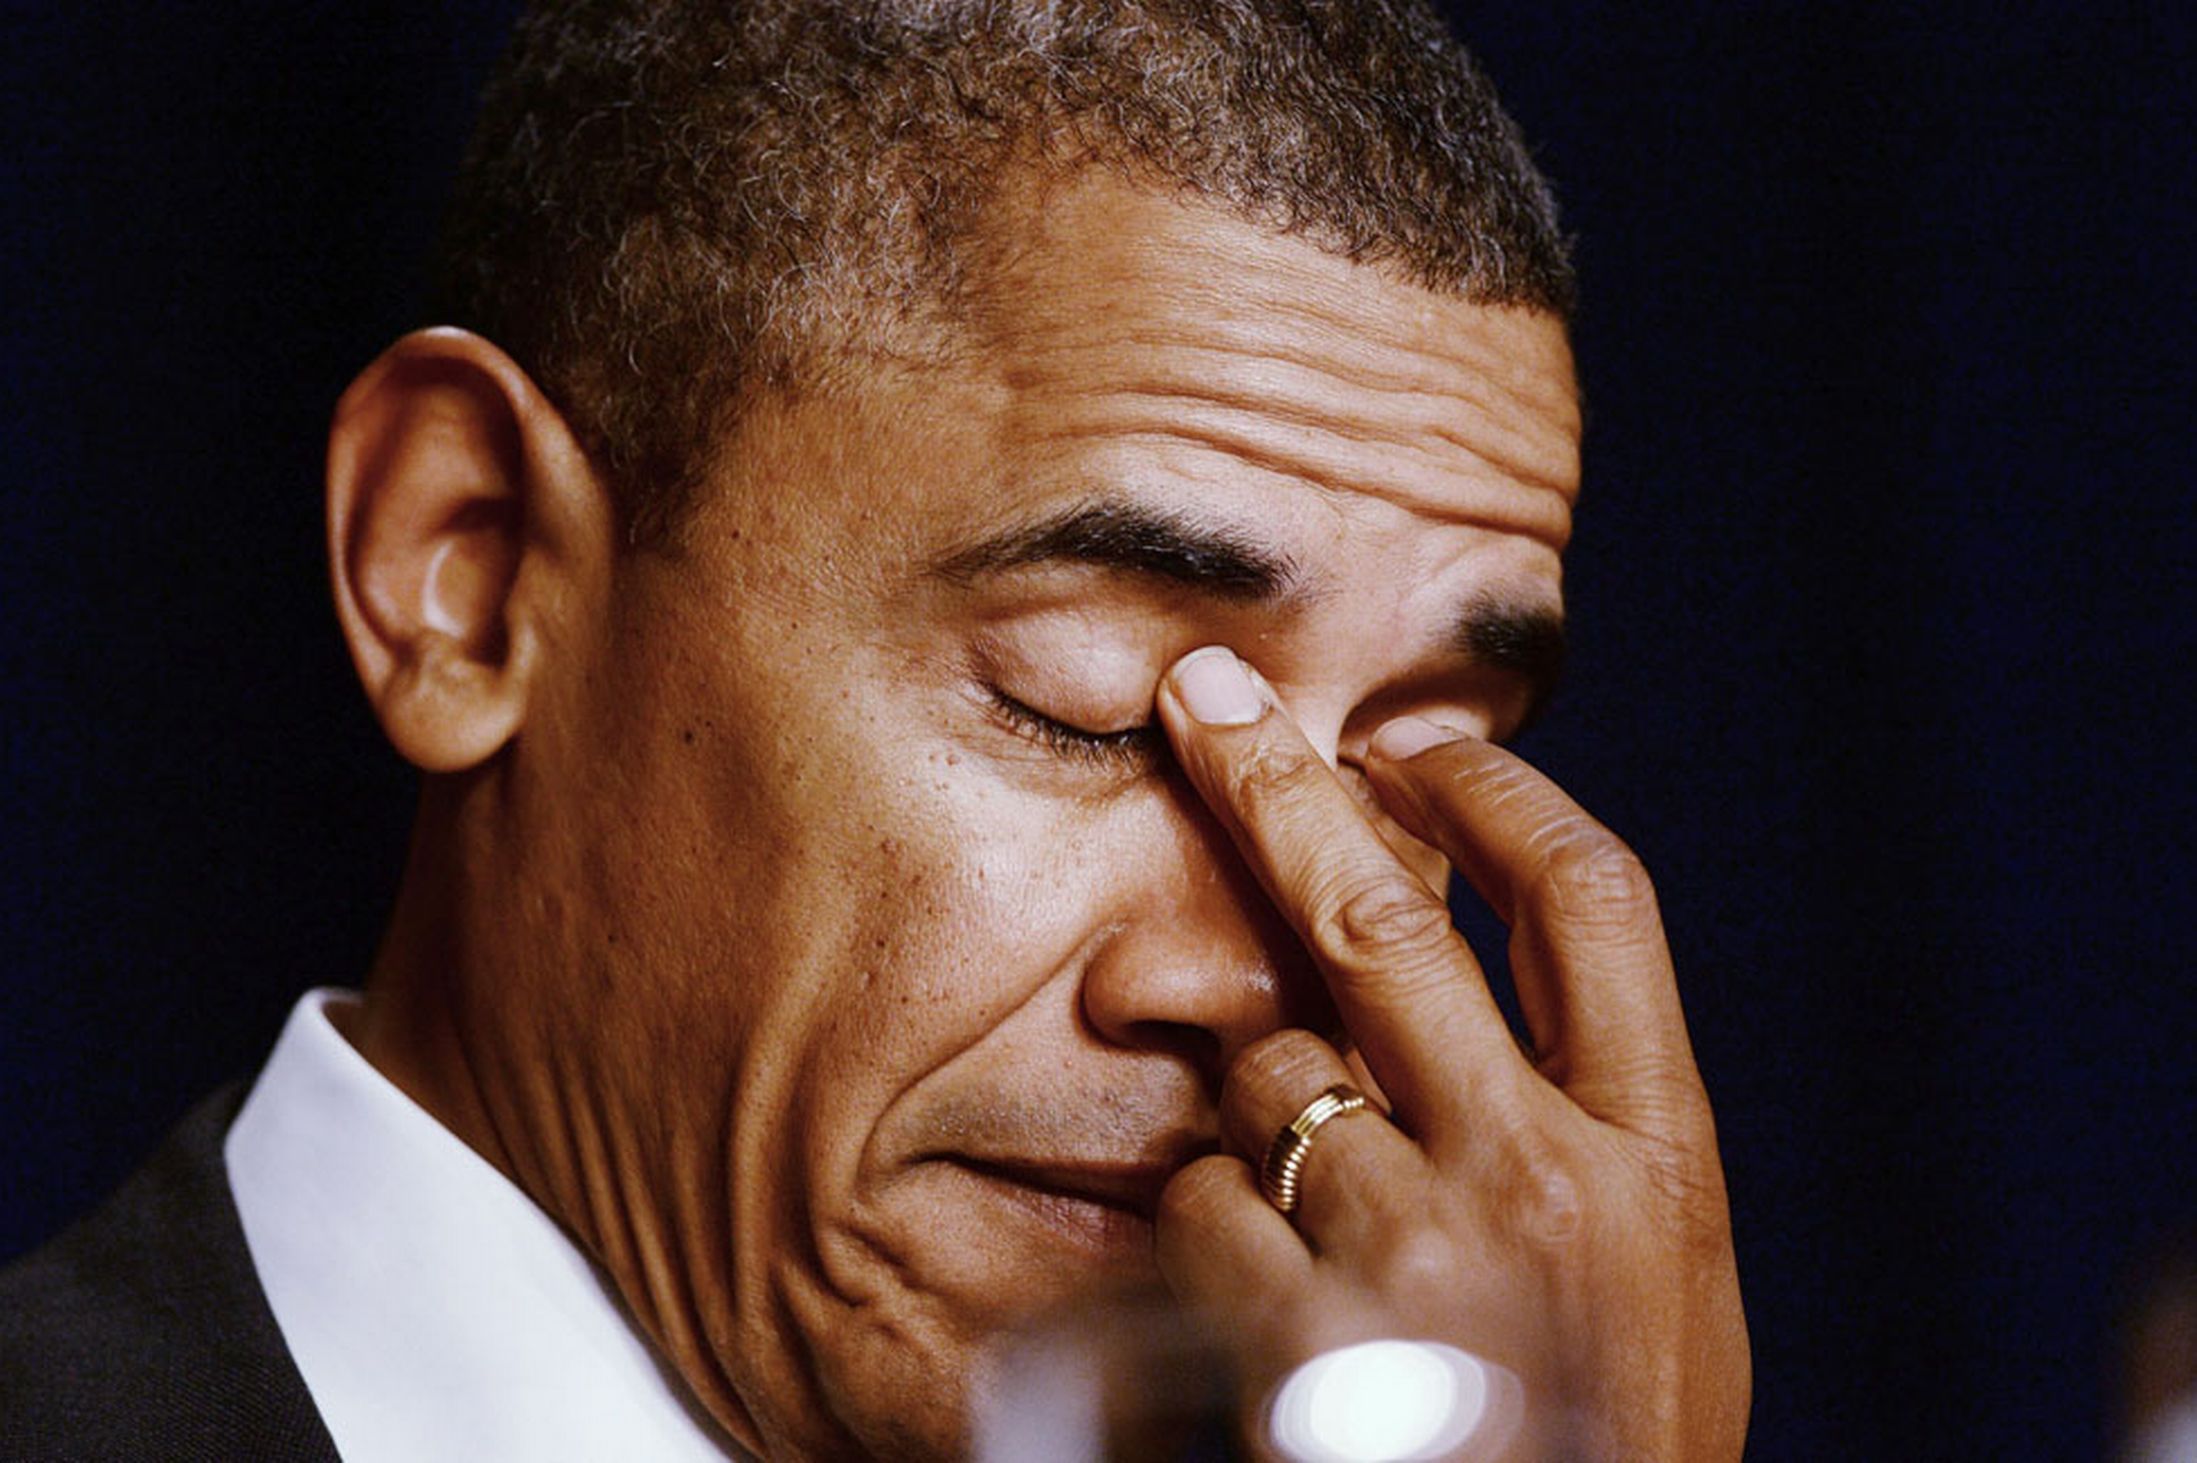 أوباما يستبعد إمكانية أن يعمل مع إدارة بايدن: “ميشيل ستتركني إذا فعلت”